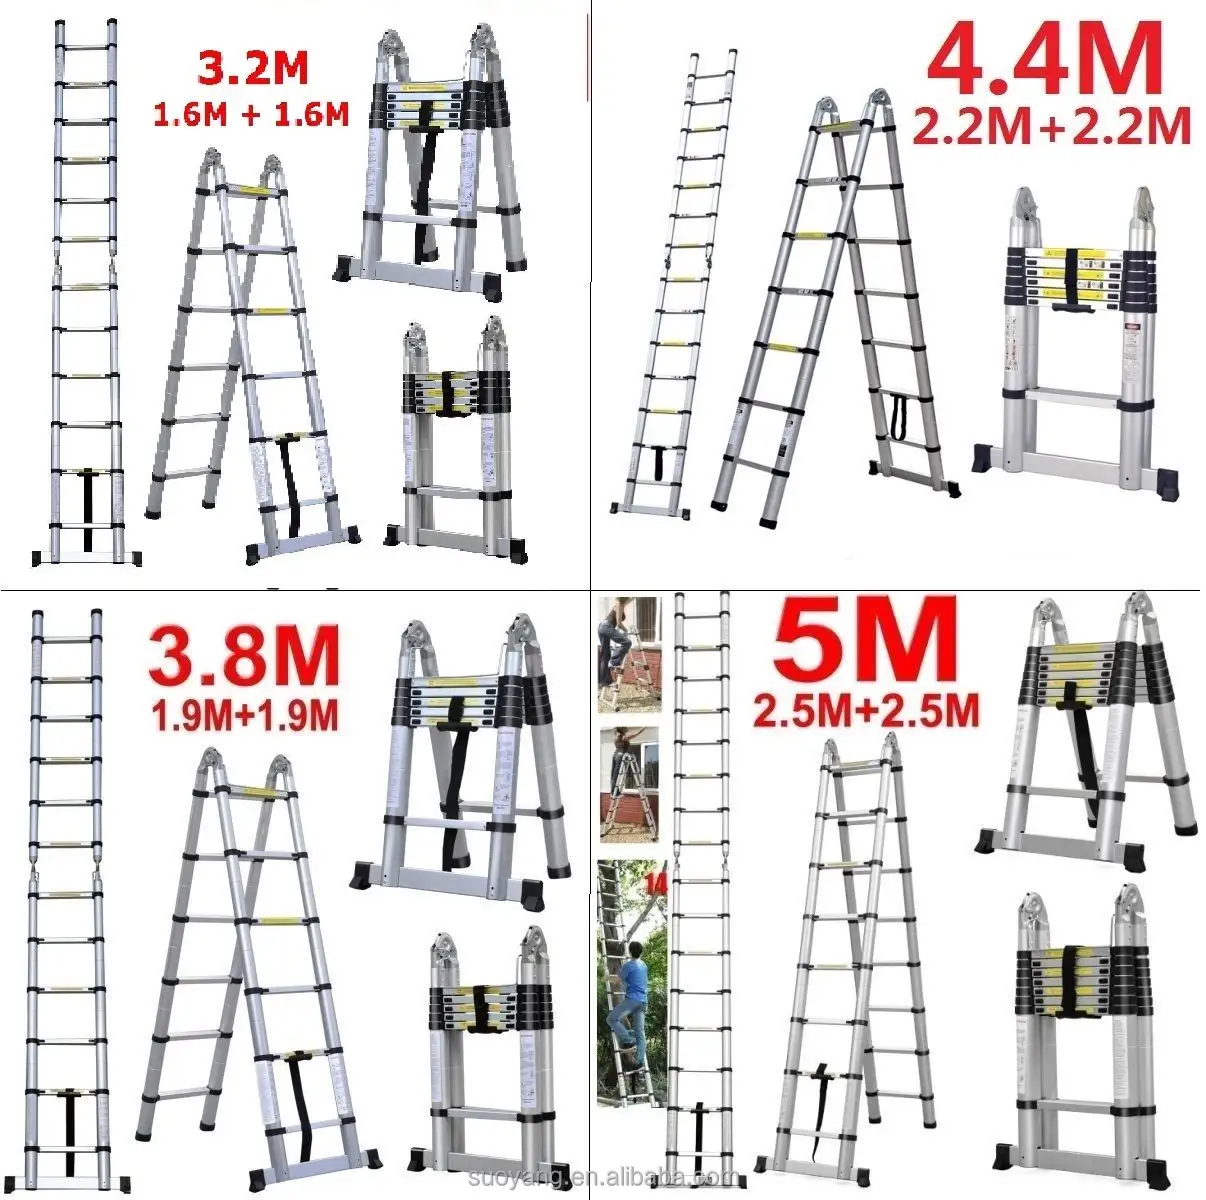 Escalera de aluminio doble telescópica tipo a, EN131-6 de escalera recta individual de 3,8 m, EN131 GS, 380x48x9CM